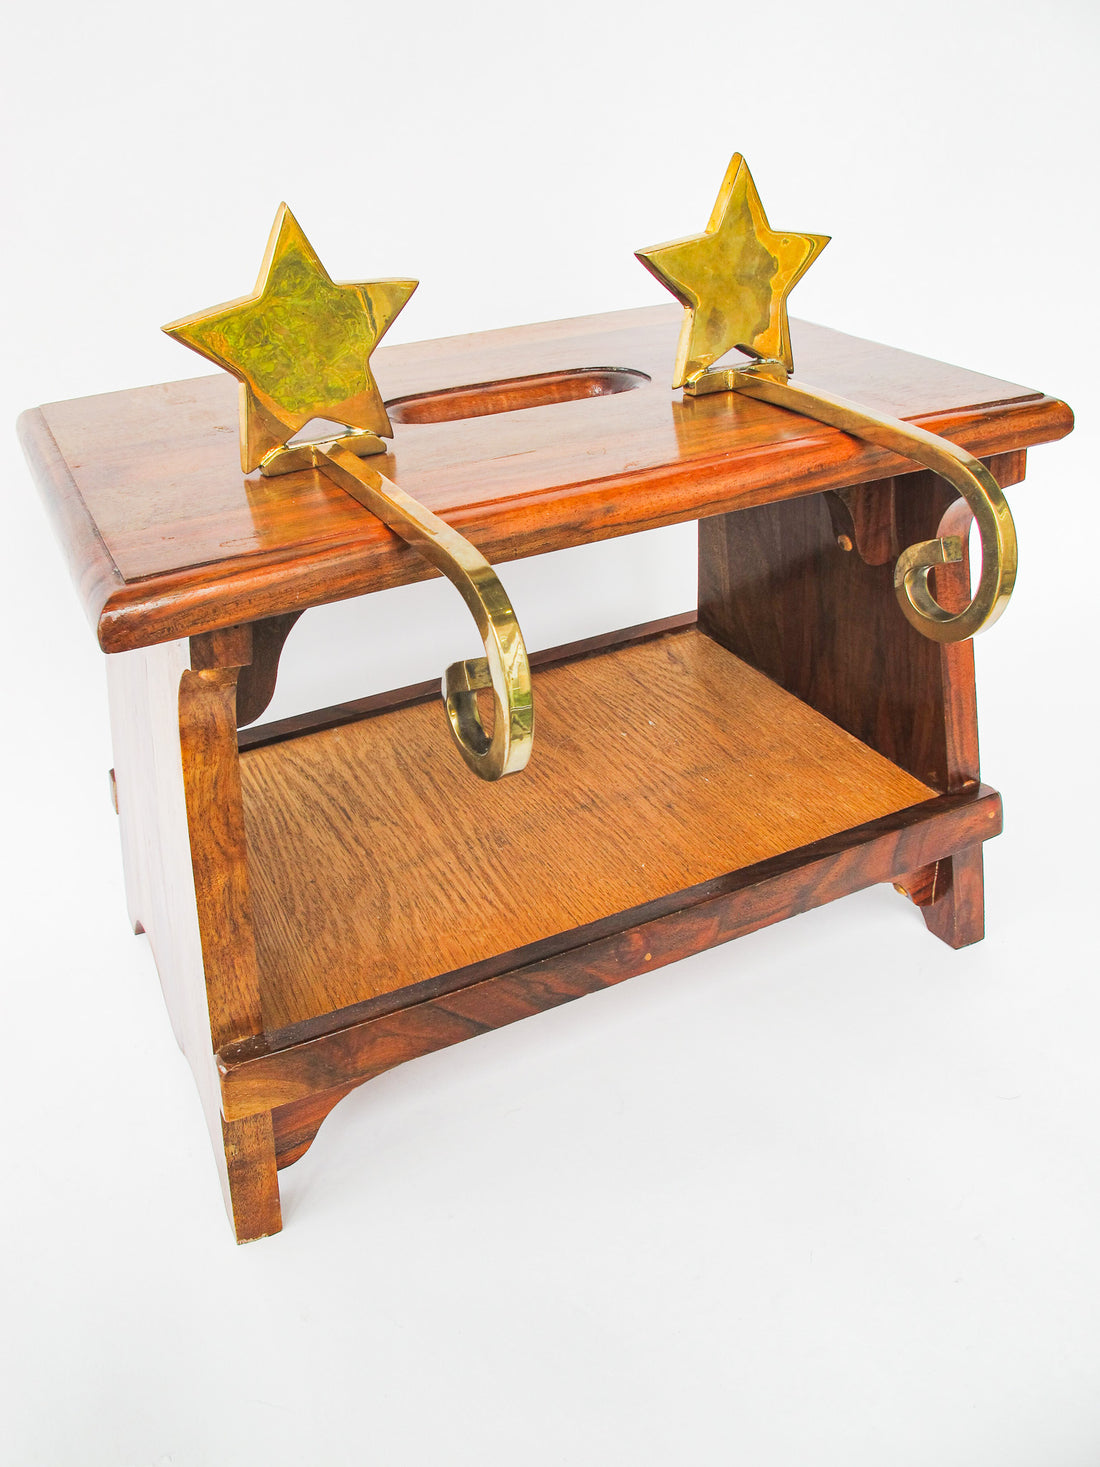 Brass Star Stocking Holder Hooks Set of 2